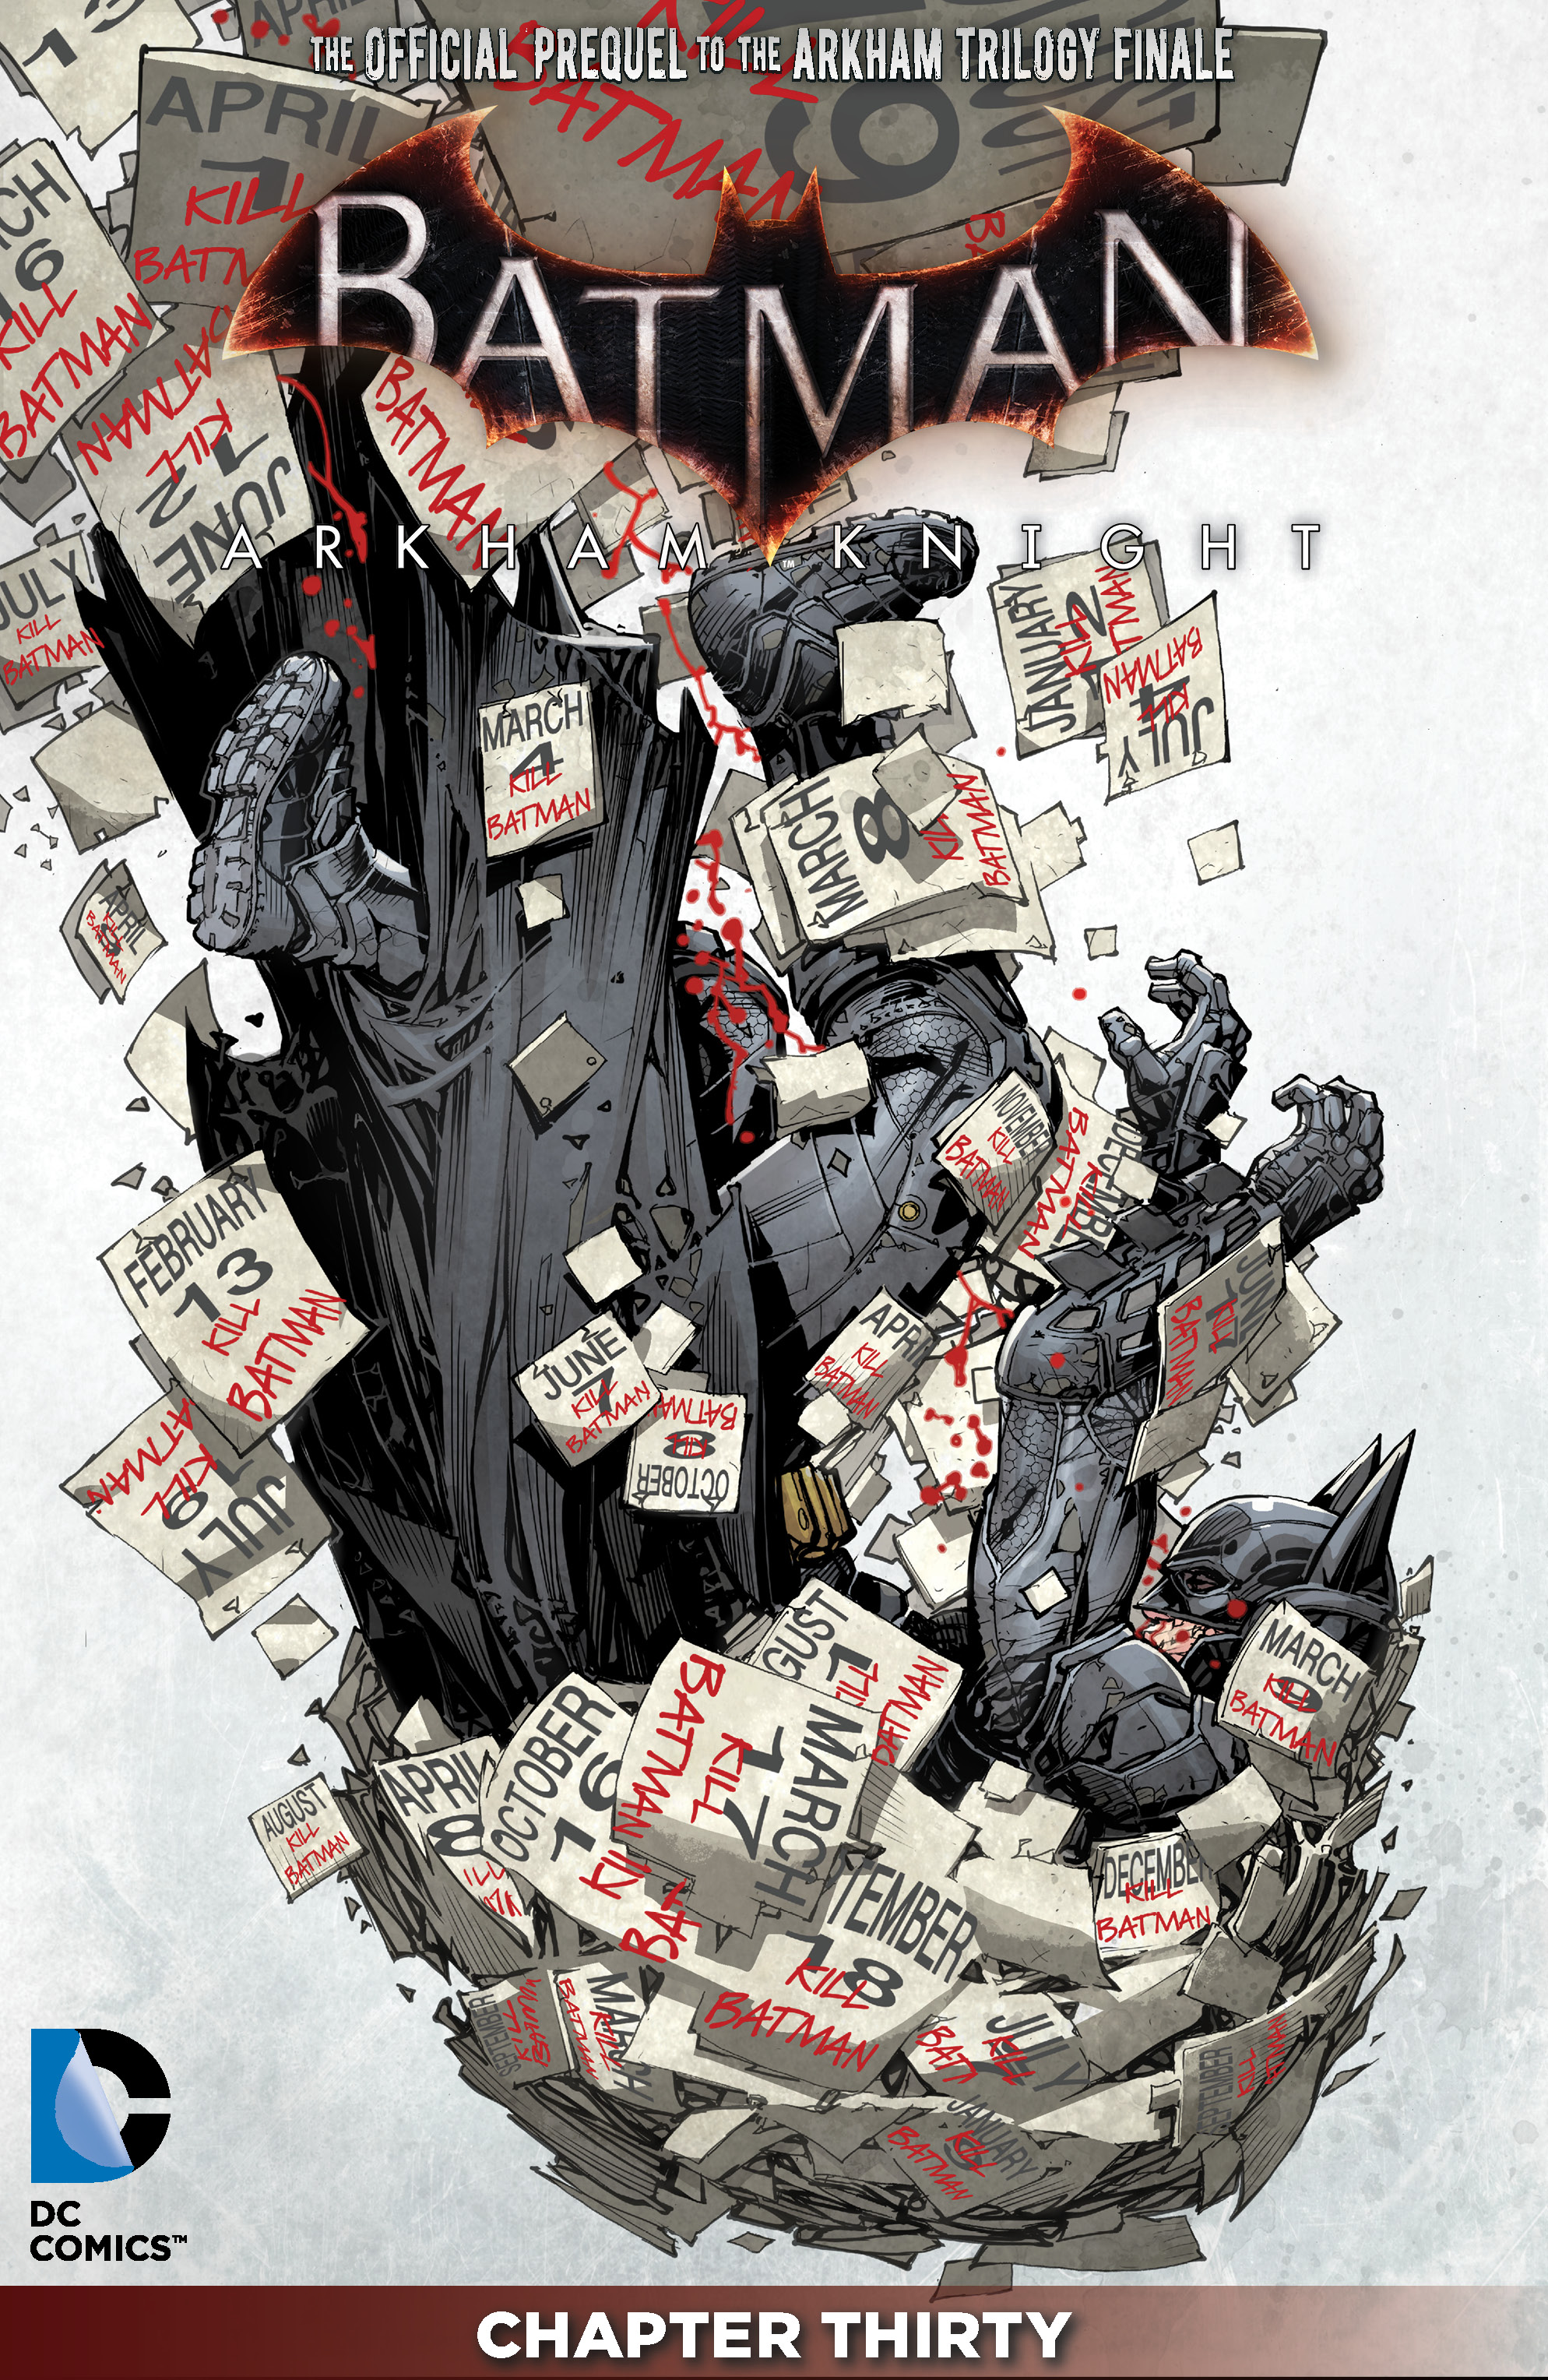 Batman: Arkham Knight #30 preview images